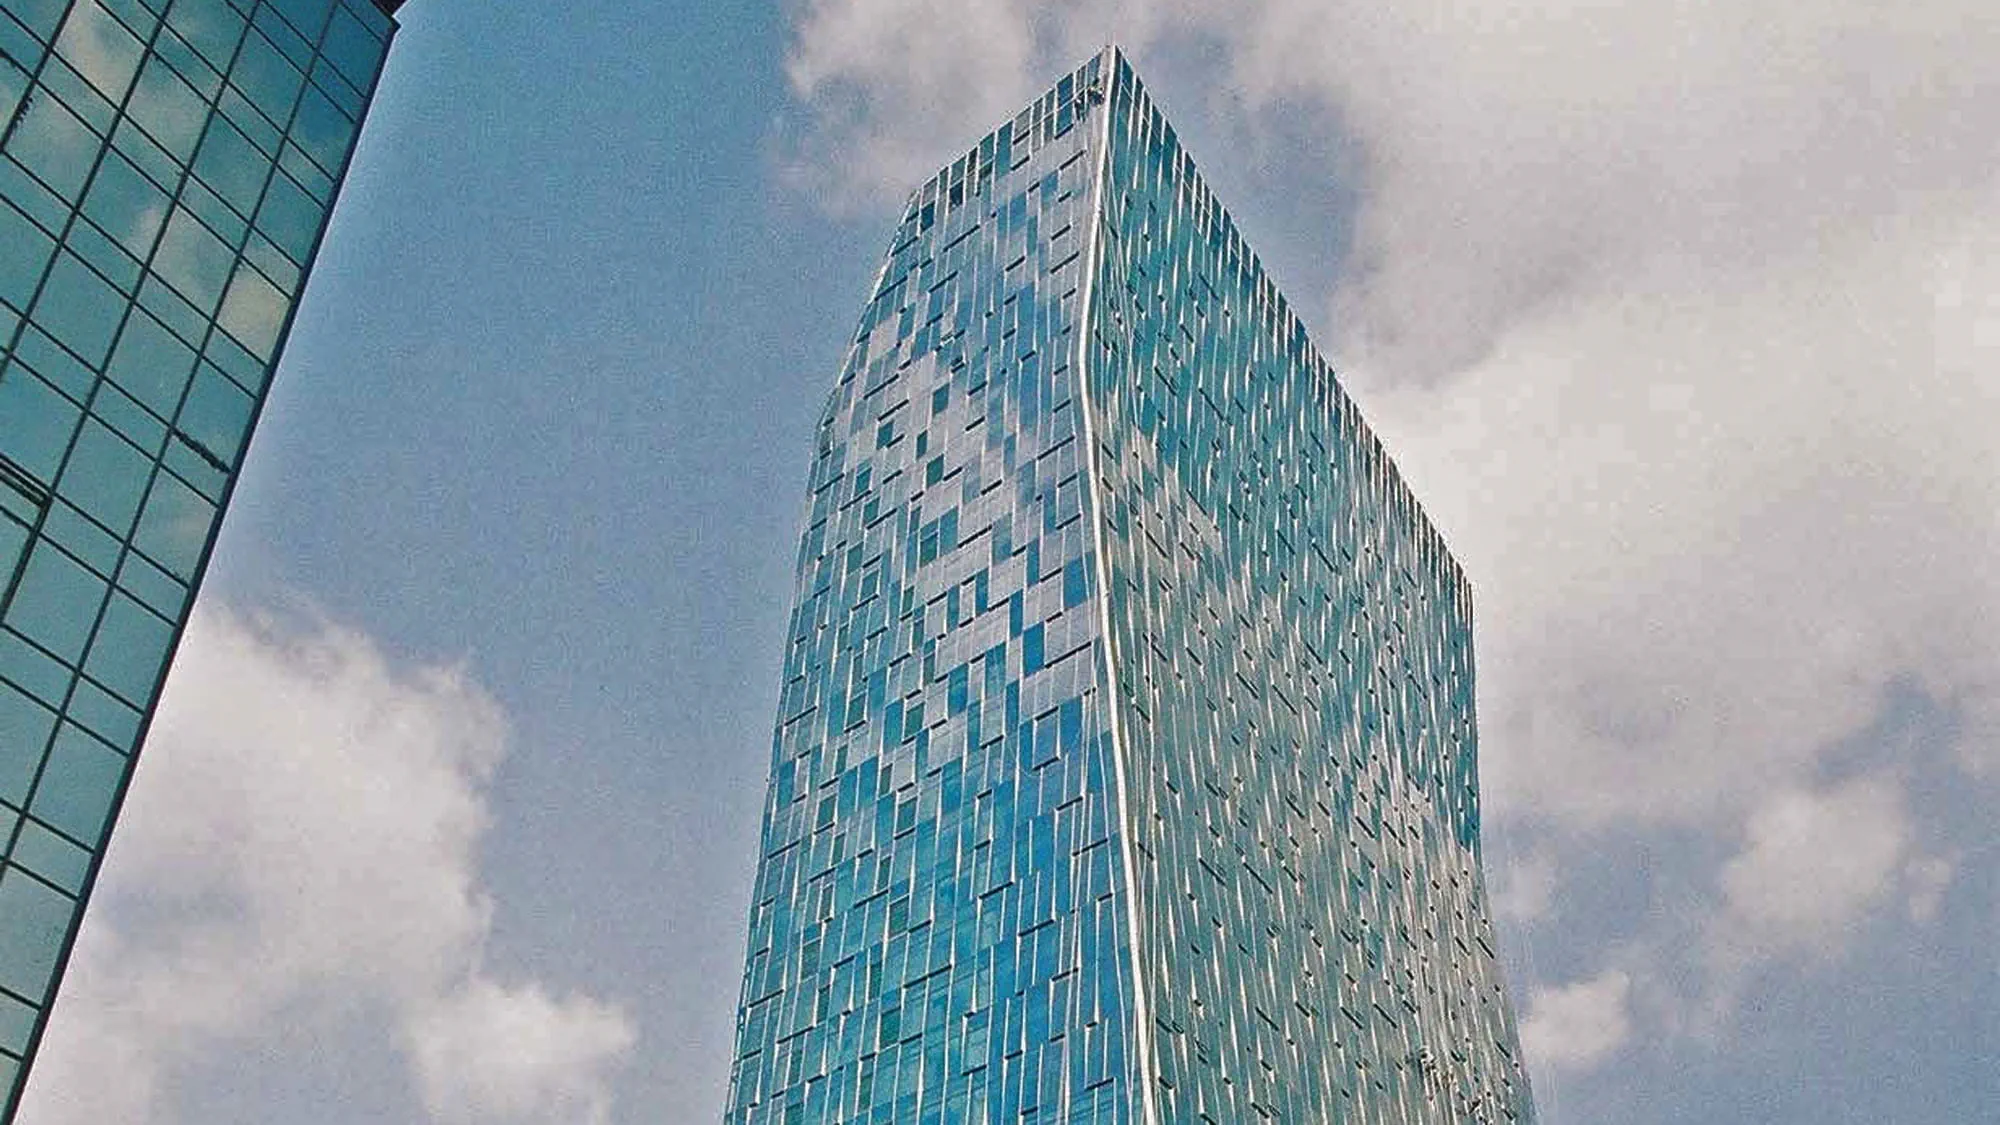 SK Telecom Tower